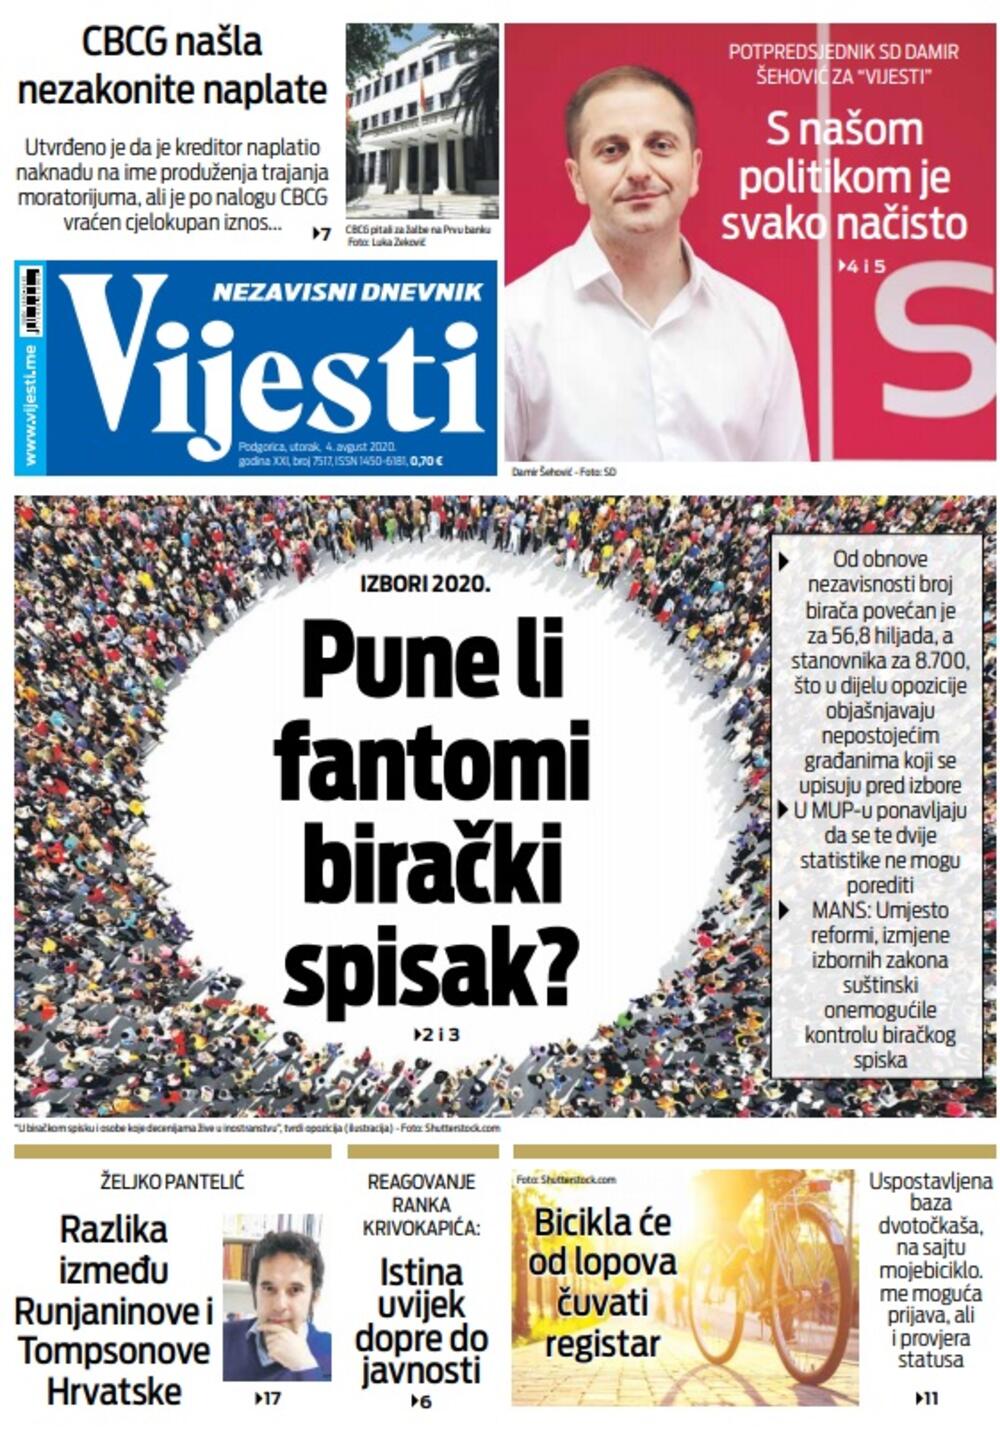 Naslovna strana "Vijesti" za utorak 4. avgust 2020. godine, Foto: Vijesti